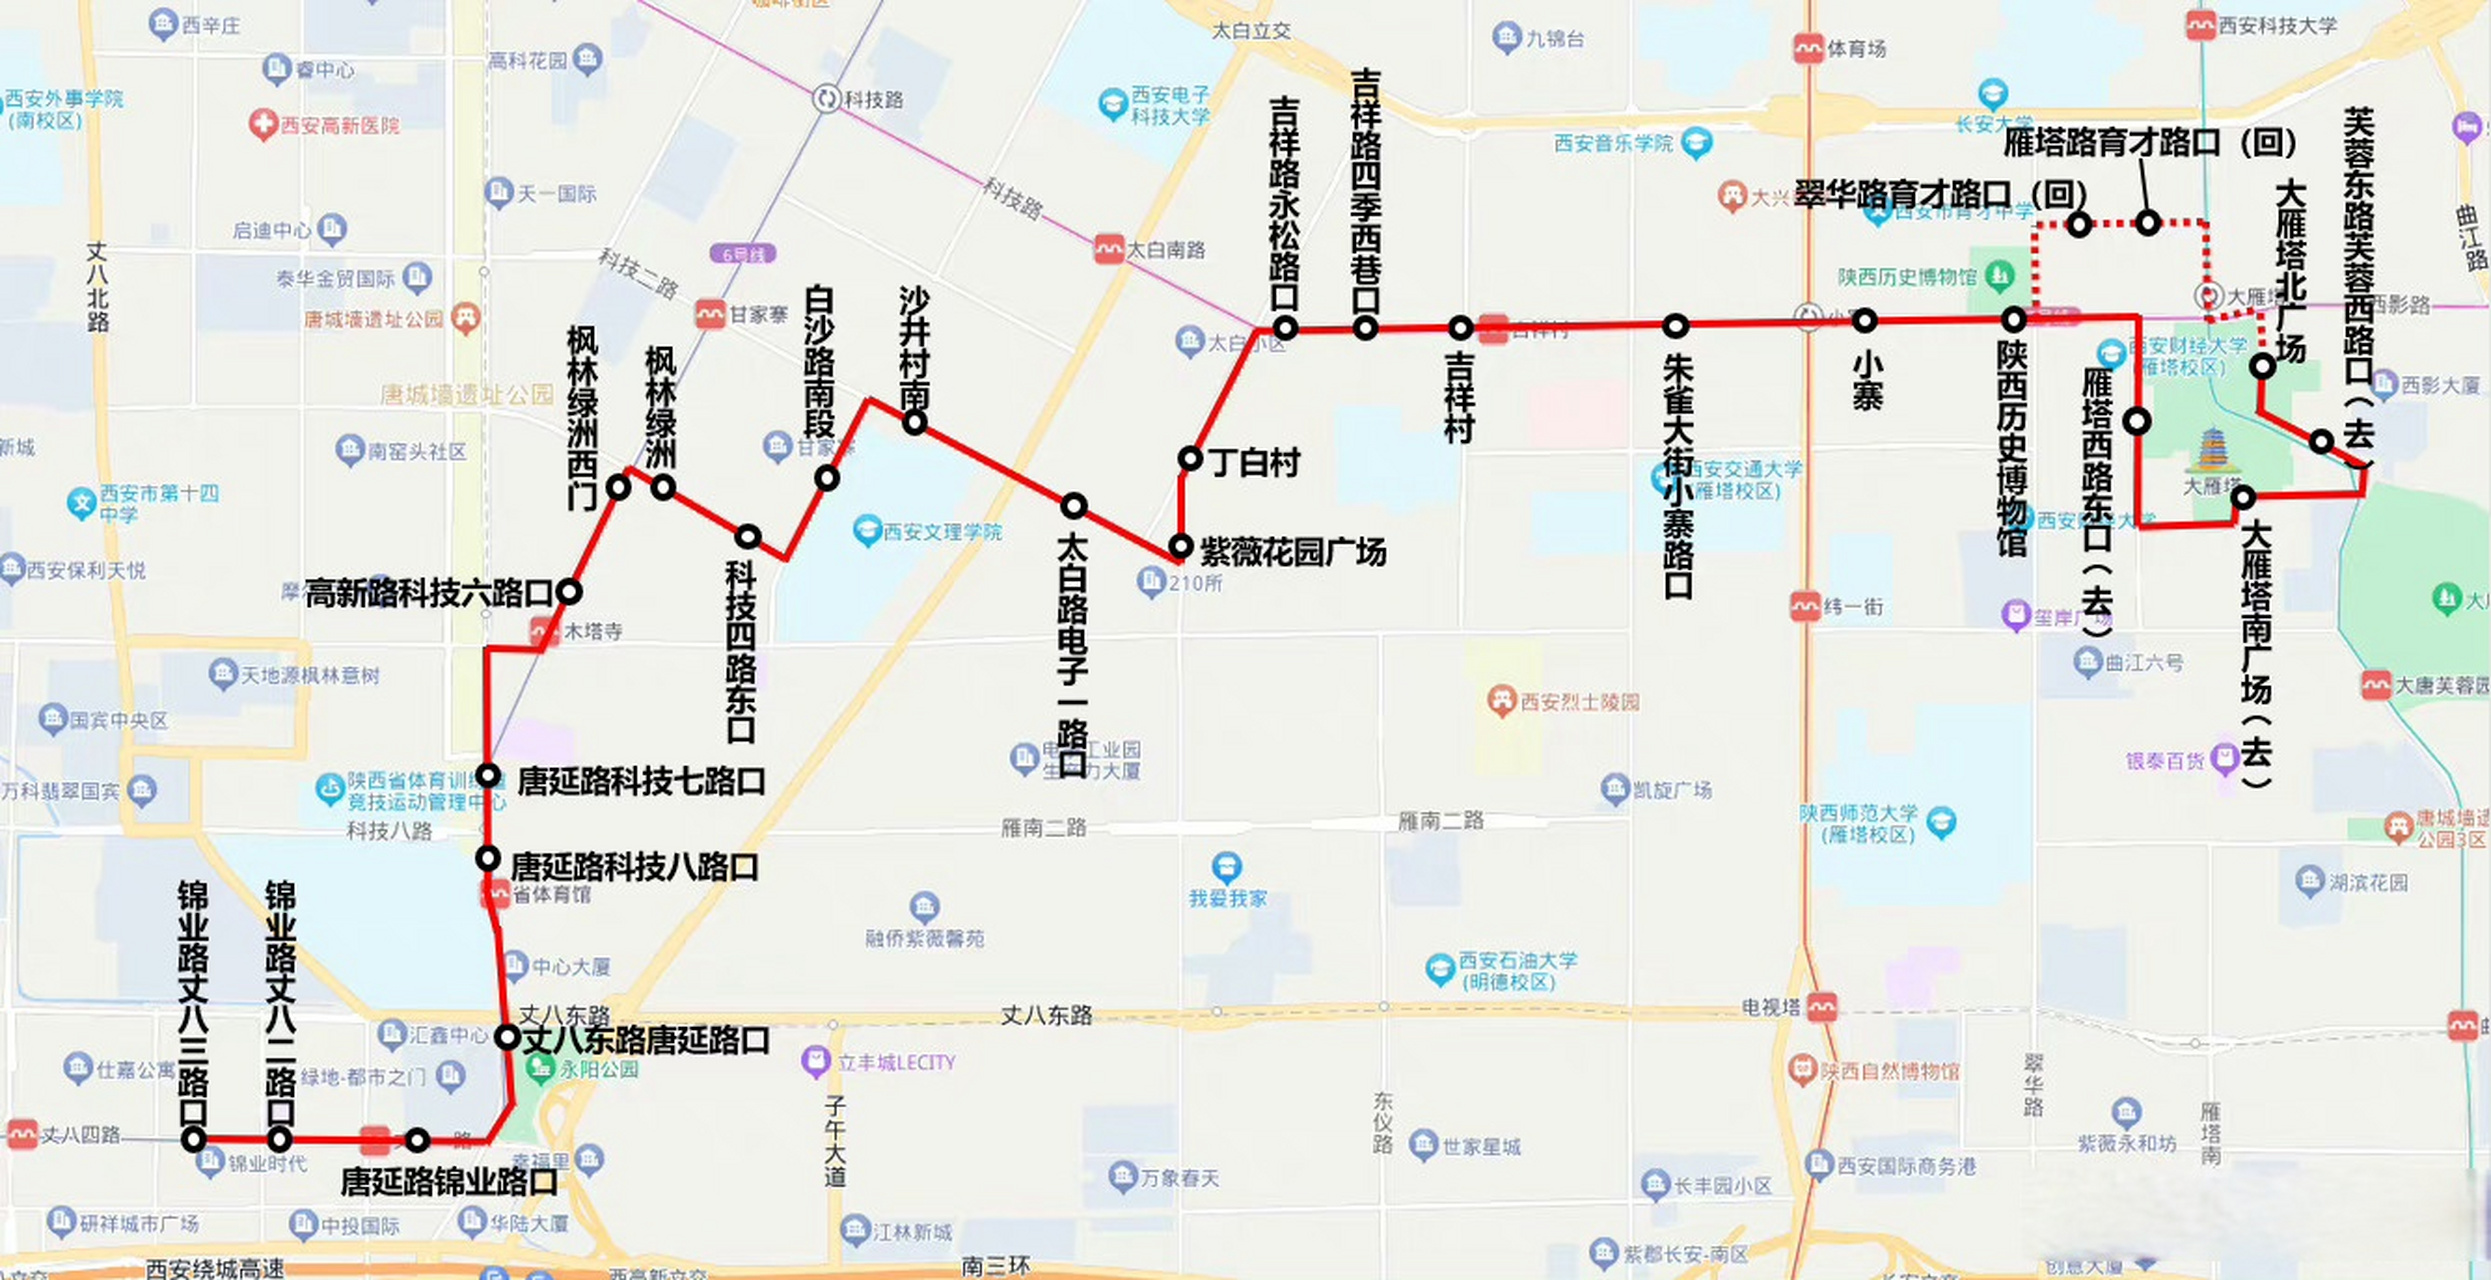 267路公交车线路图图片